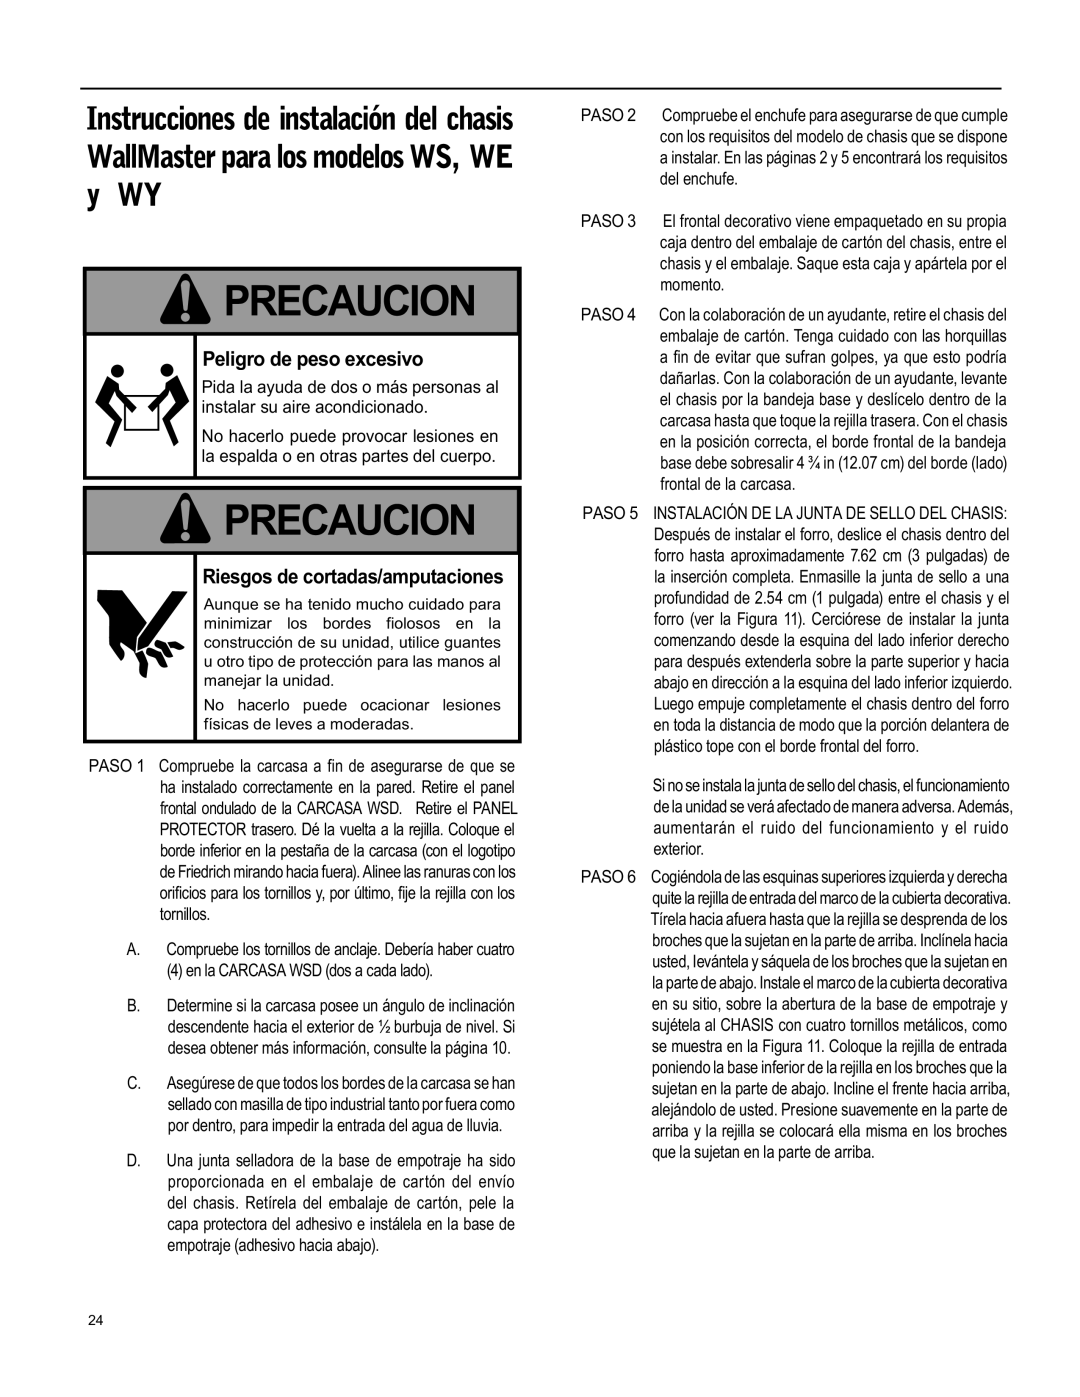 Friedrich WY12, WY09, WS12 operation manual Precaucion, Peligro de peso excesivo, Riesgos de cortadas/amputaciones 